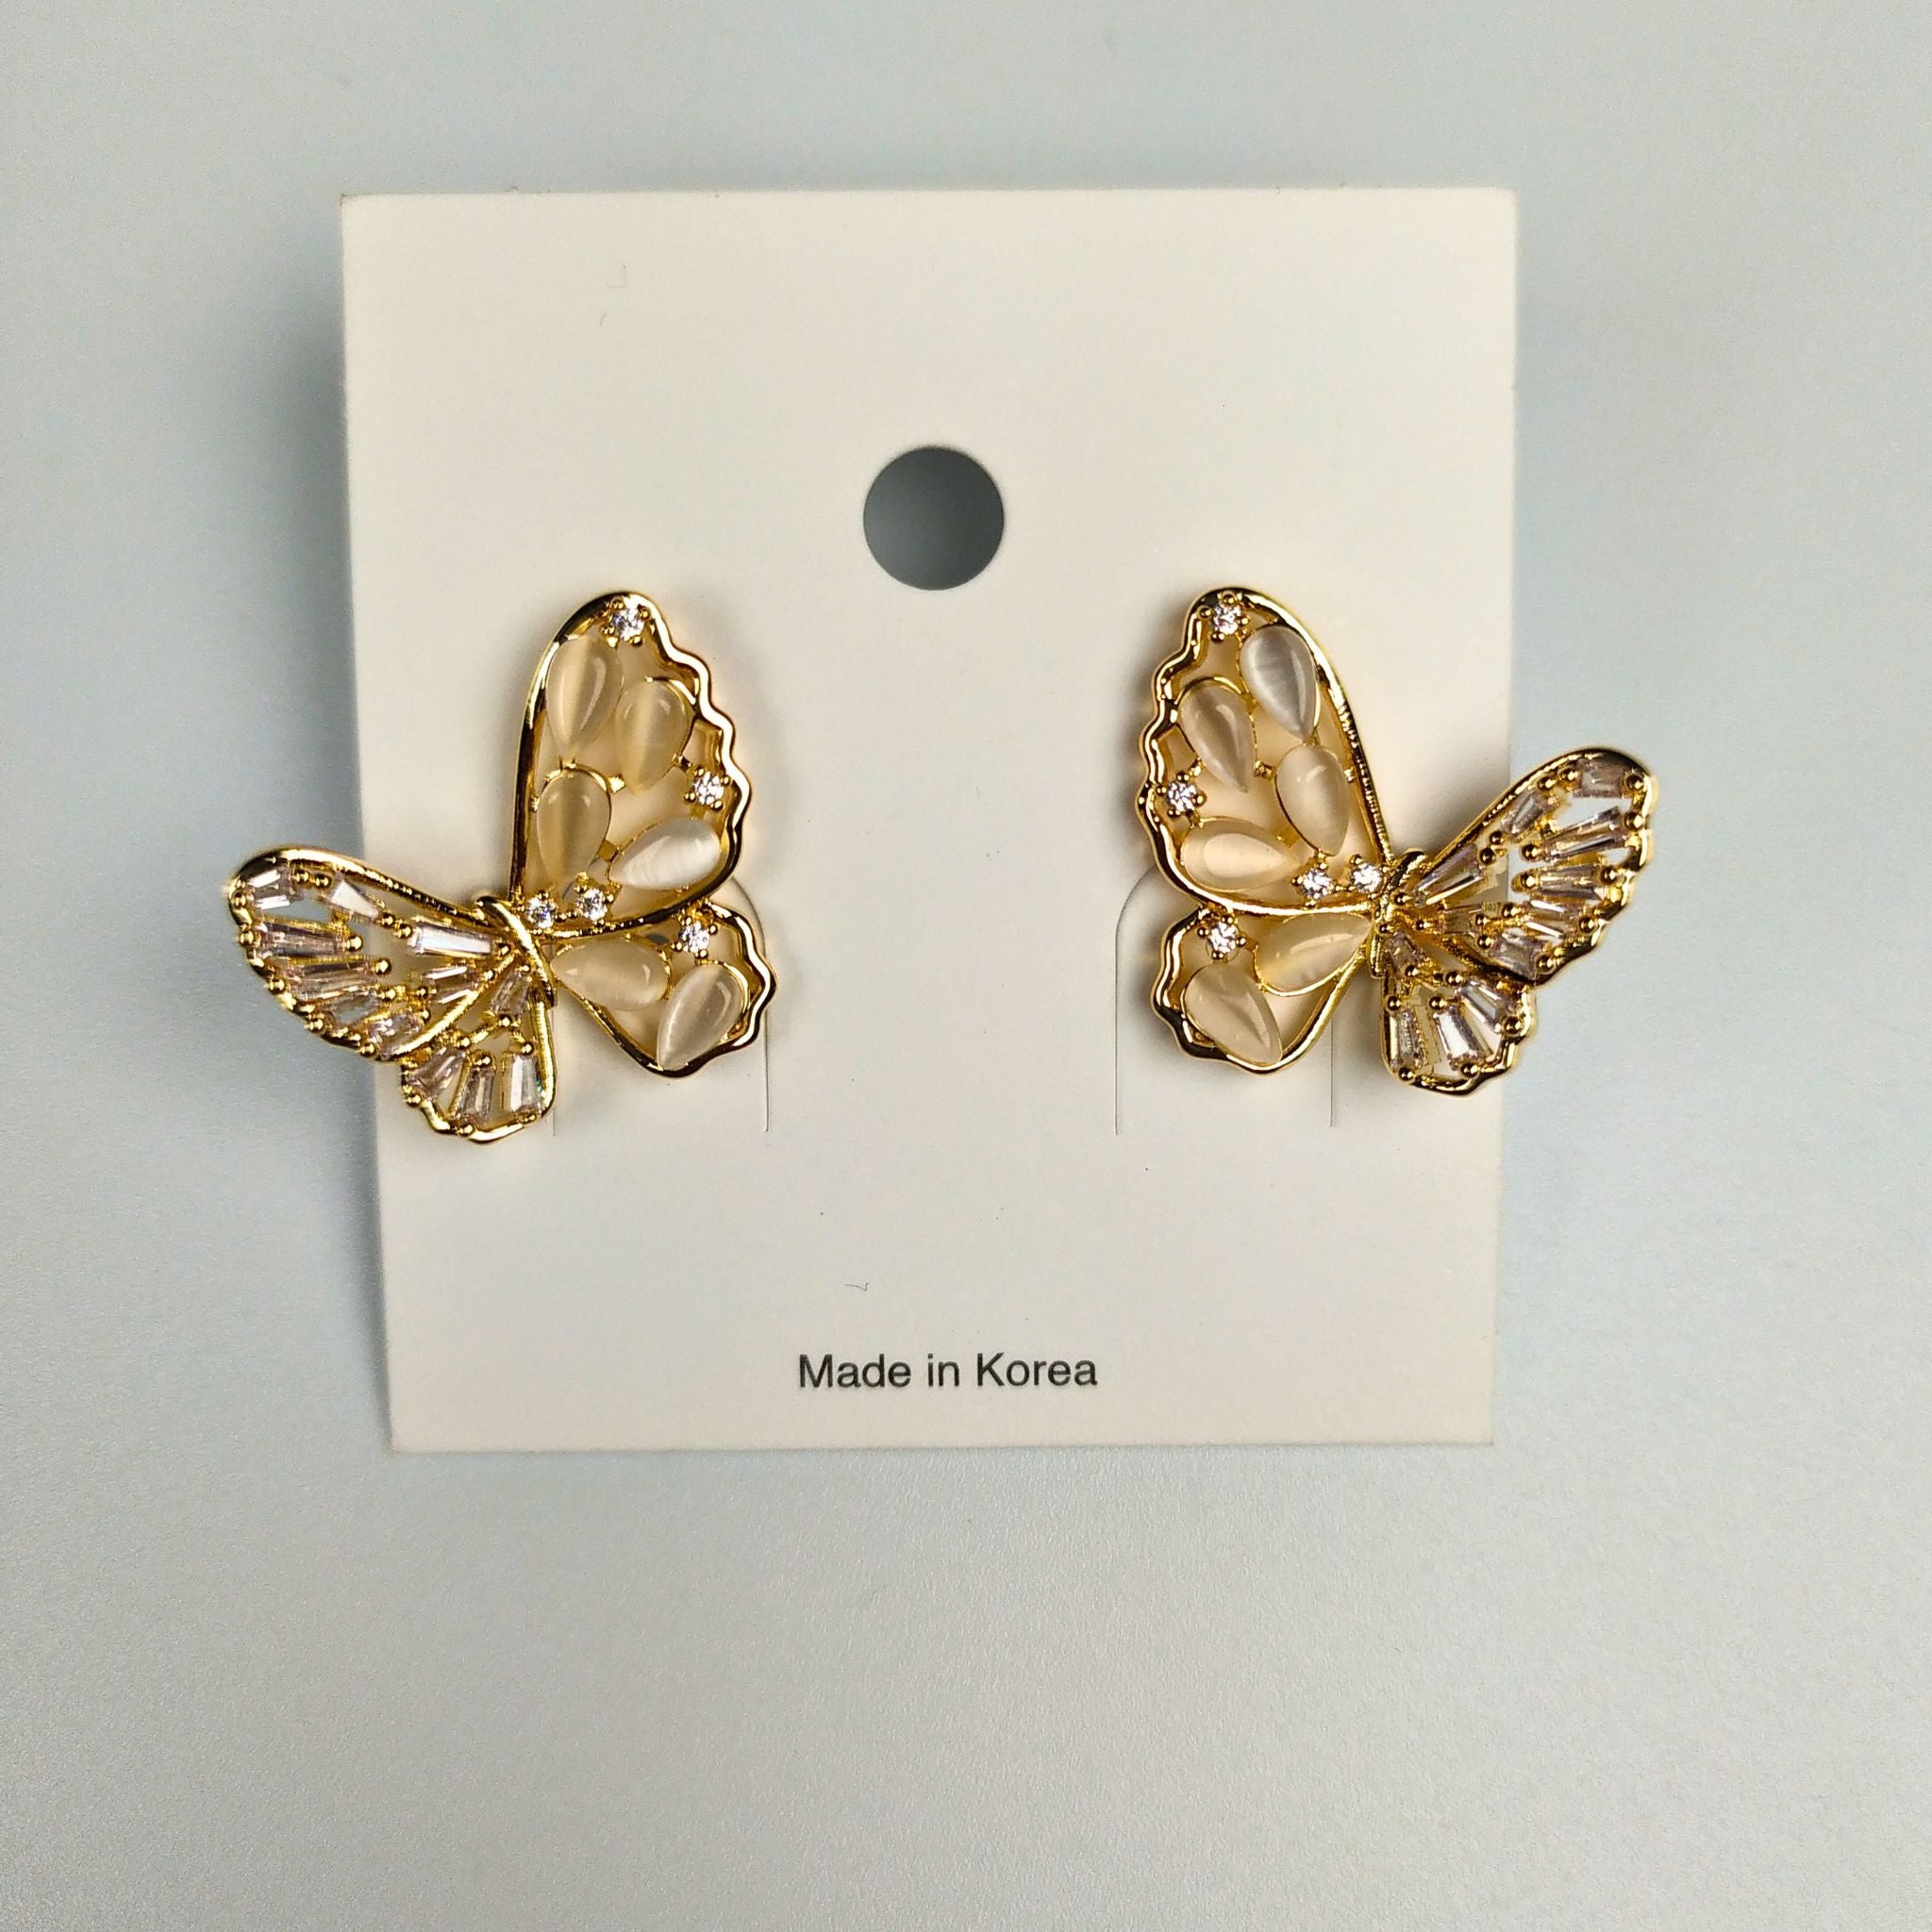 Admiral Butterfly Earrings